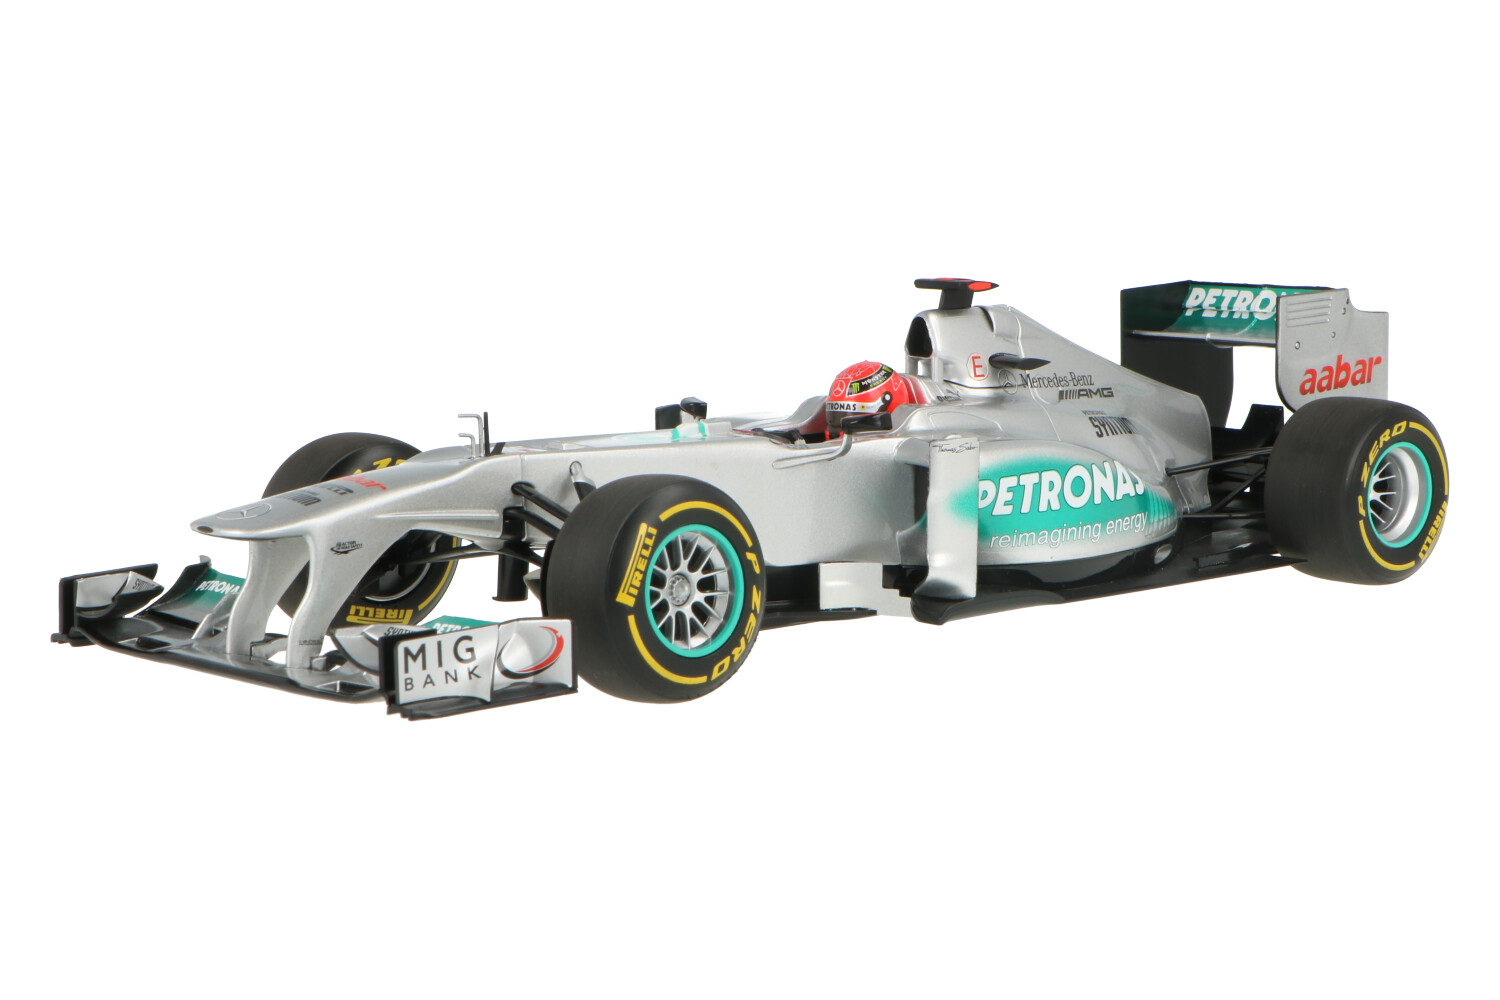 Mercedes-AMG-Petronas-F1-Michael-Schumacher-110120077_13154012138112612Mercedes-AMG-Petronas-F1-Michael-Schumacher-110120077_Houseofmodelcars_.jpg